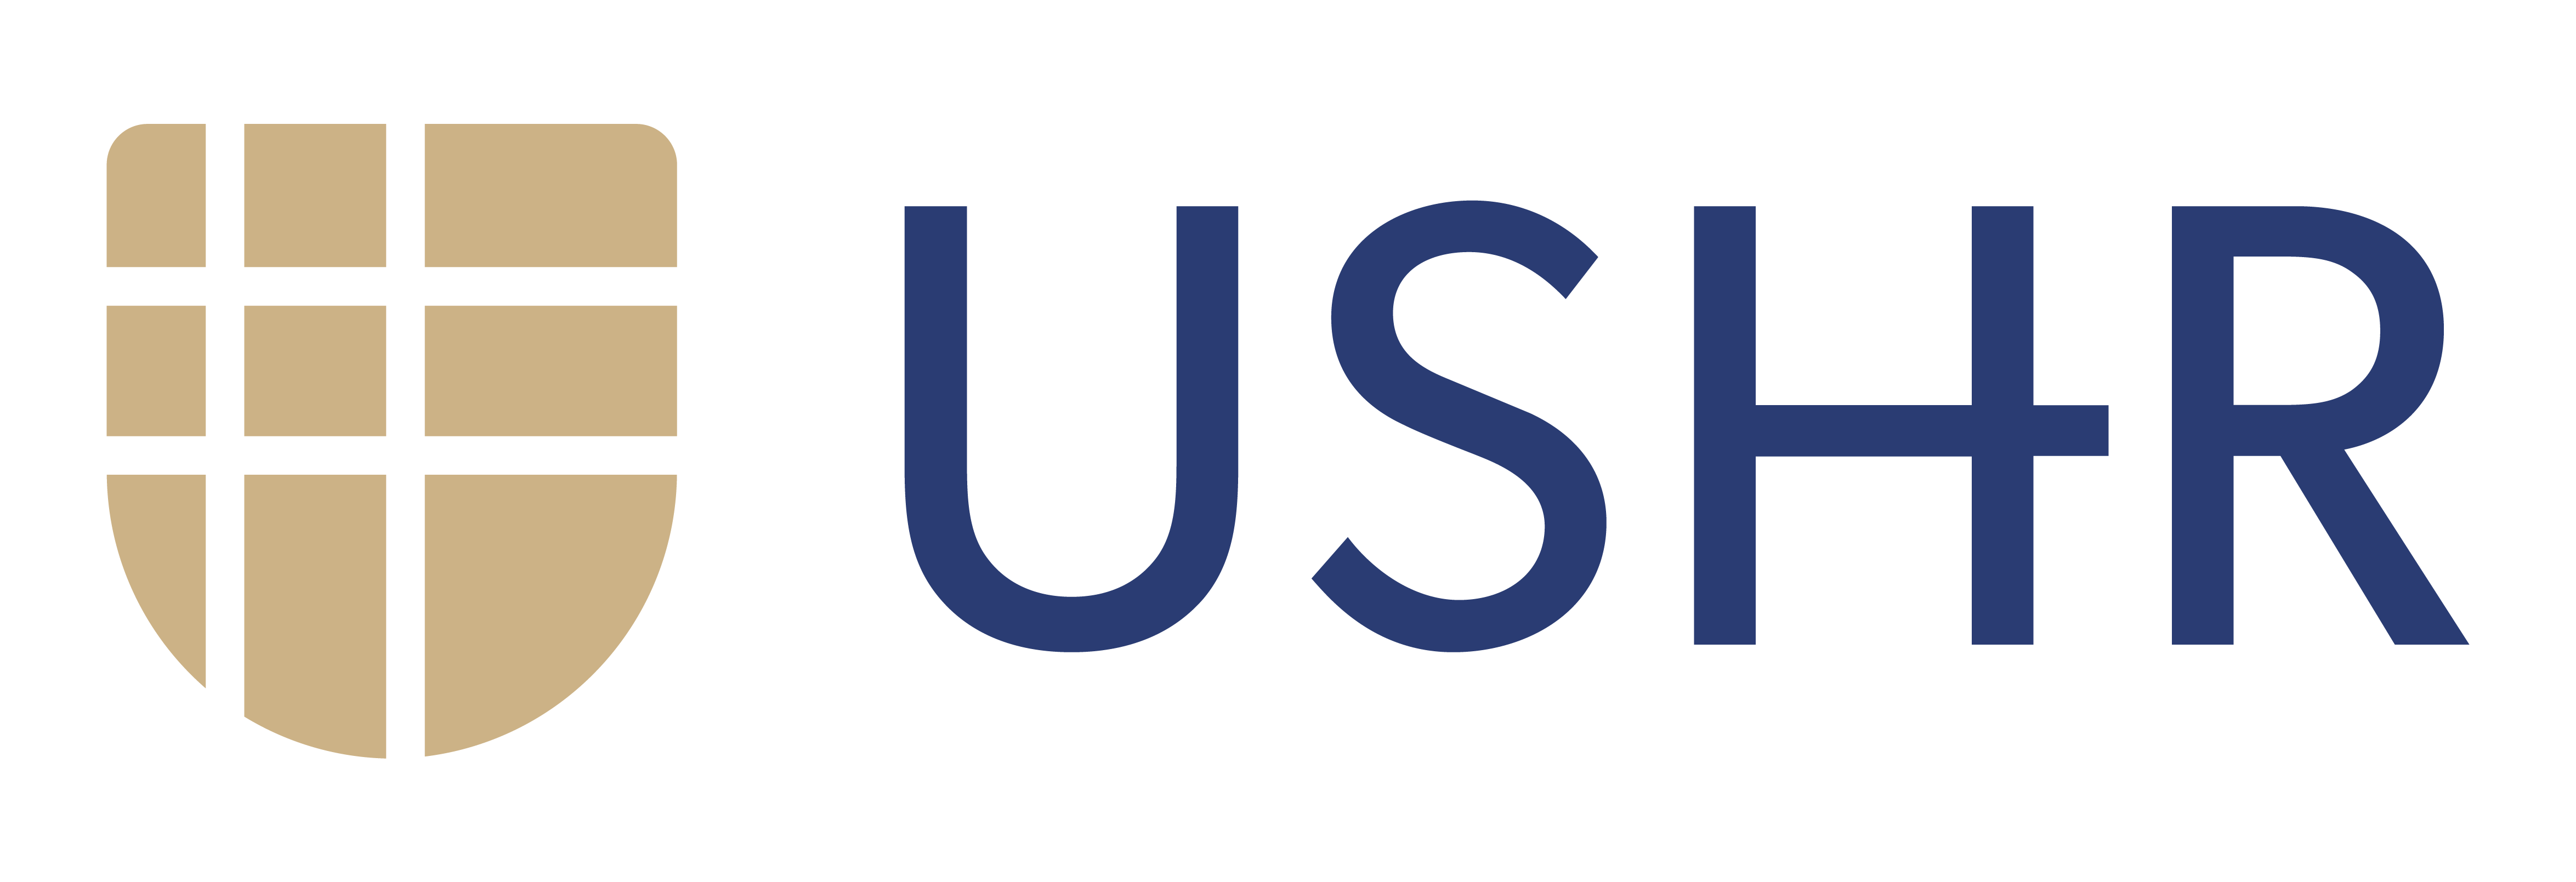 Under-Served Health Resources (USHR) logo